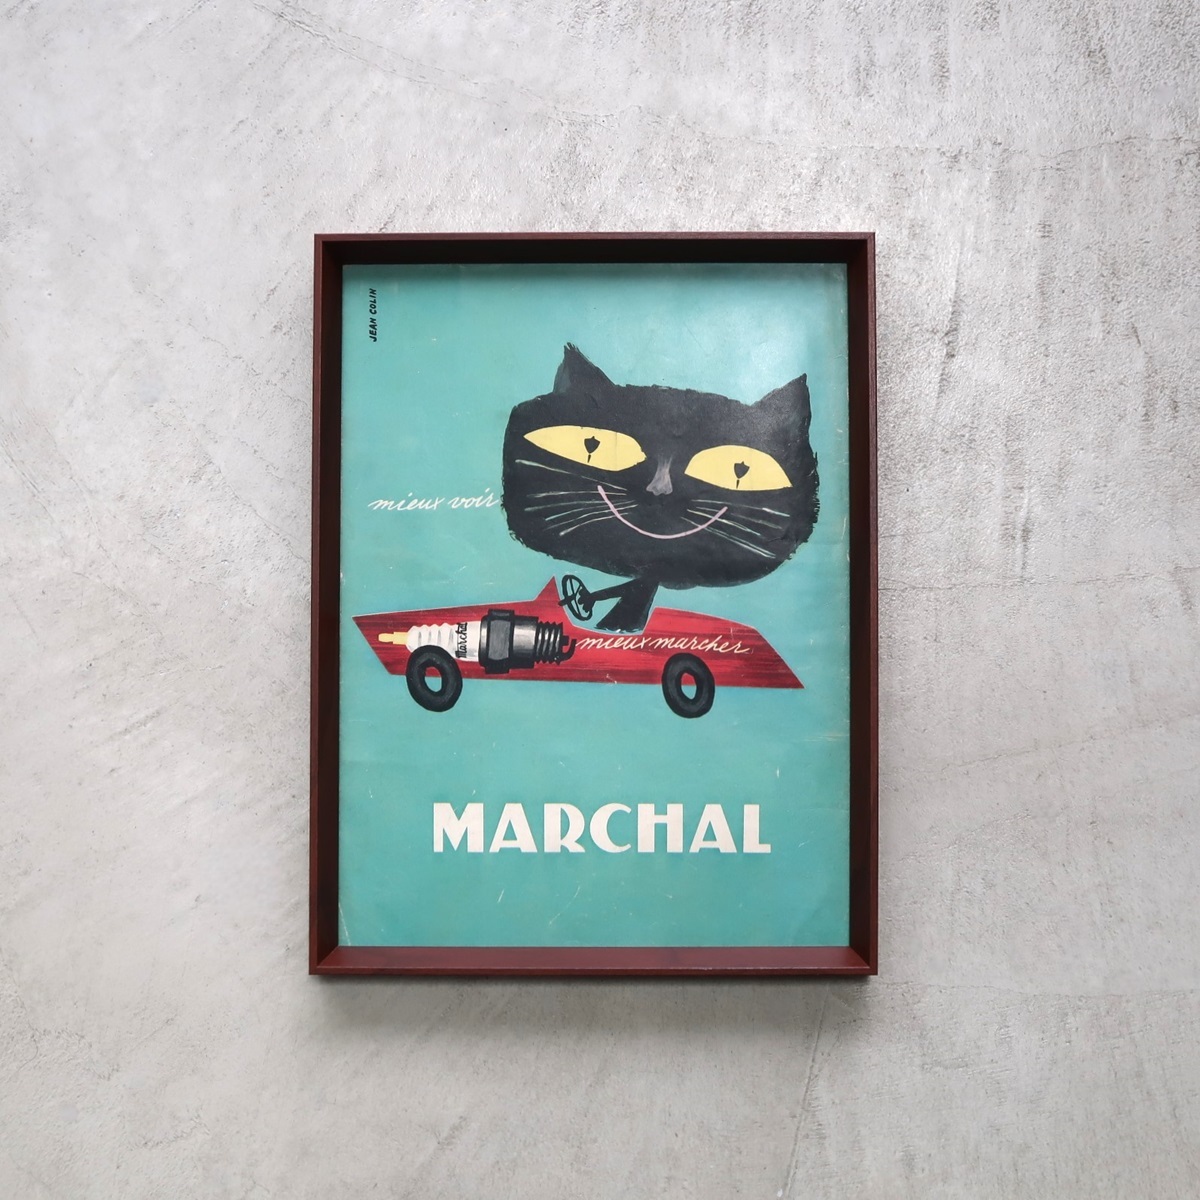 MARCHAL マーシャル 1960年 ジャンコラン Jean Colin イラスト 黒猫 フランス ヴィンテージ 広告 額装品 レア フレンチ ポスター 稀少_画像2